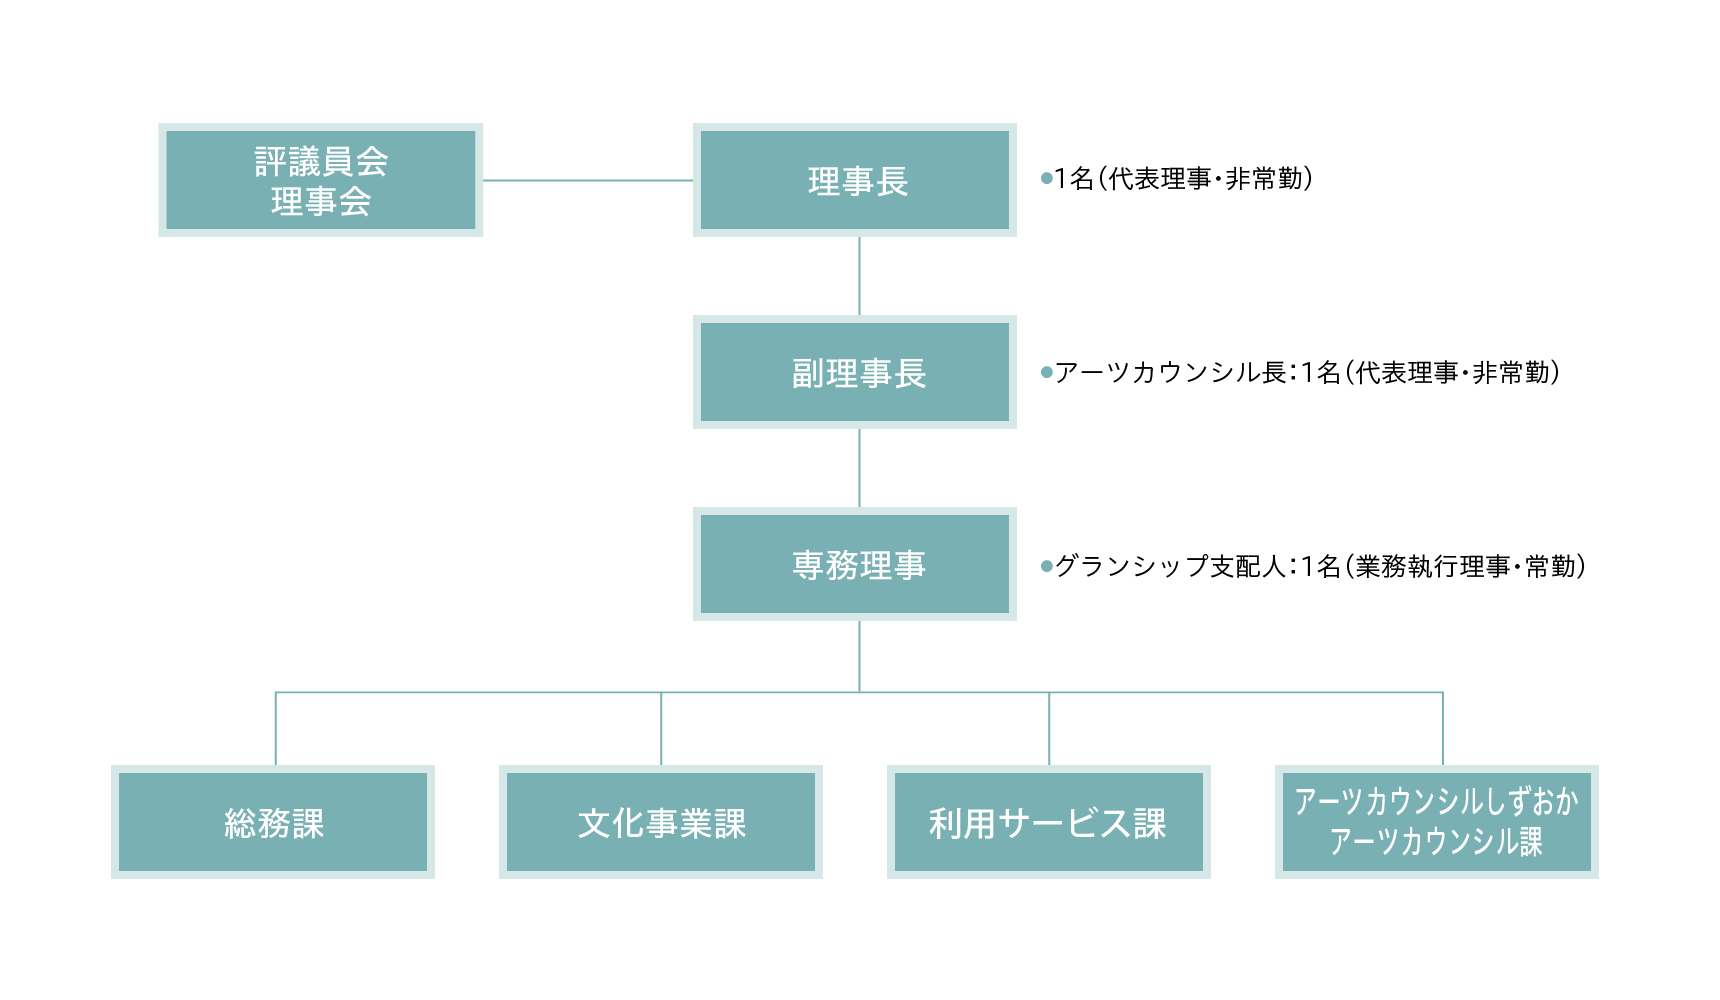 公益財団法人静岡県文化財団 組織図